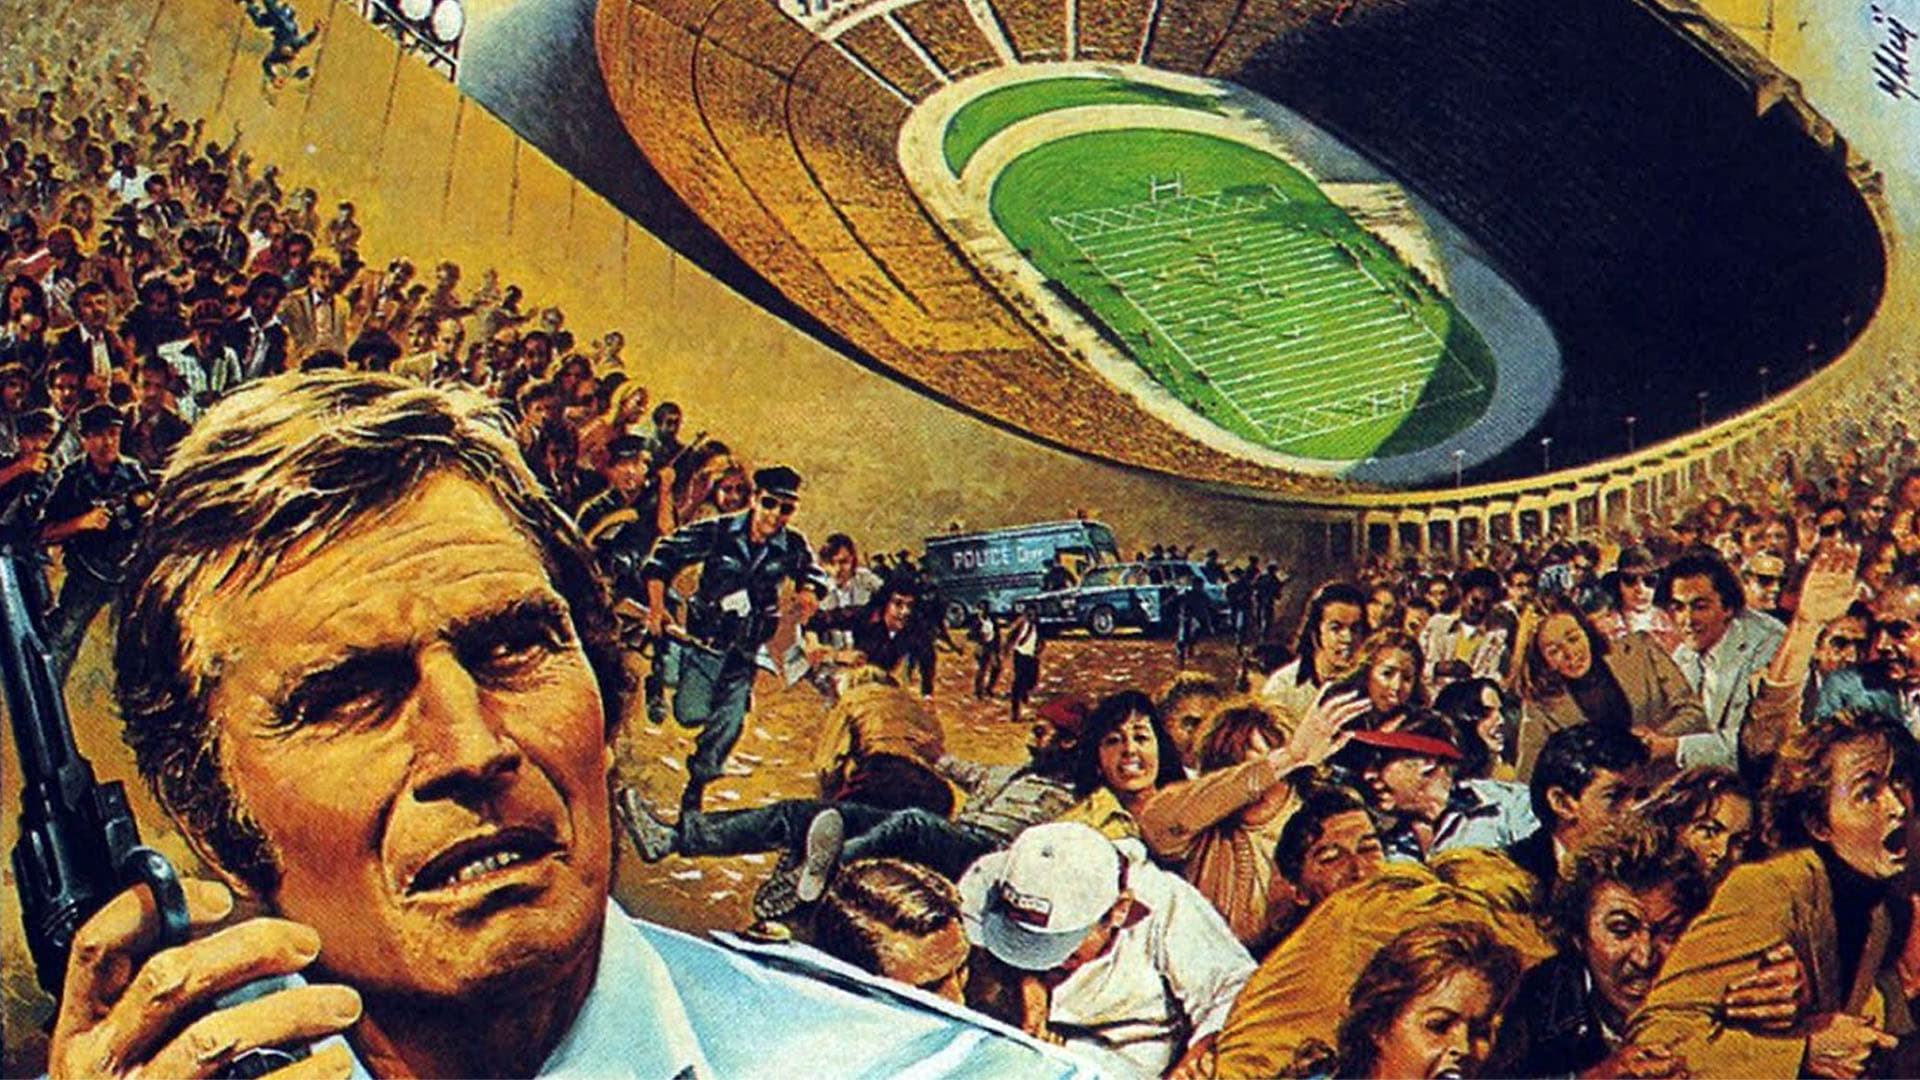 Pánico en el estadio (1976)